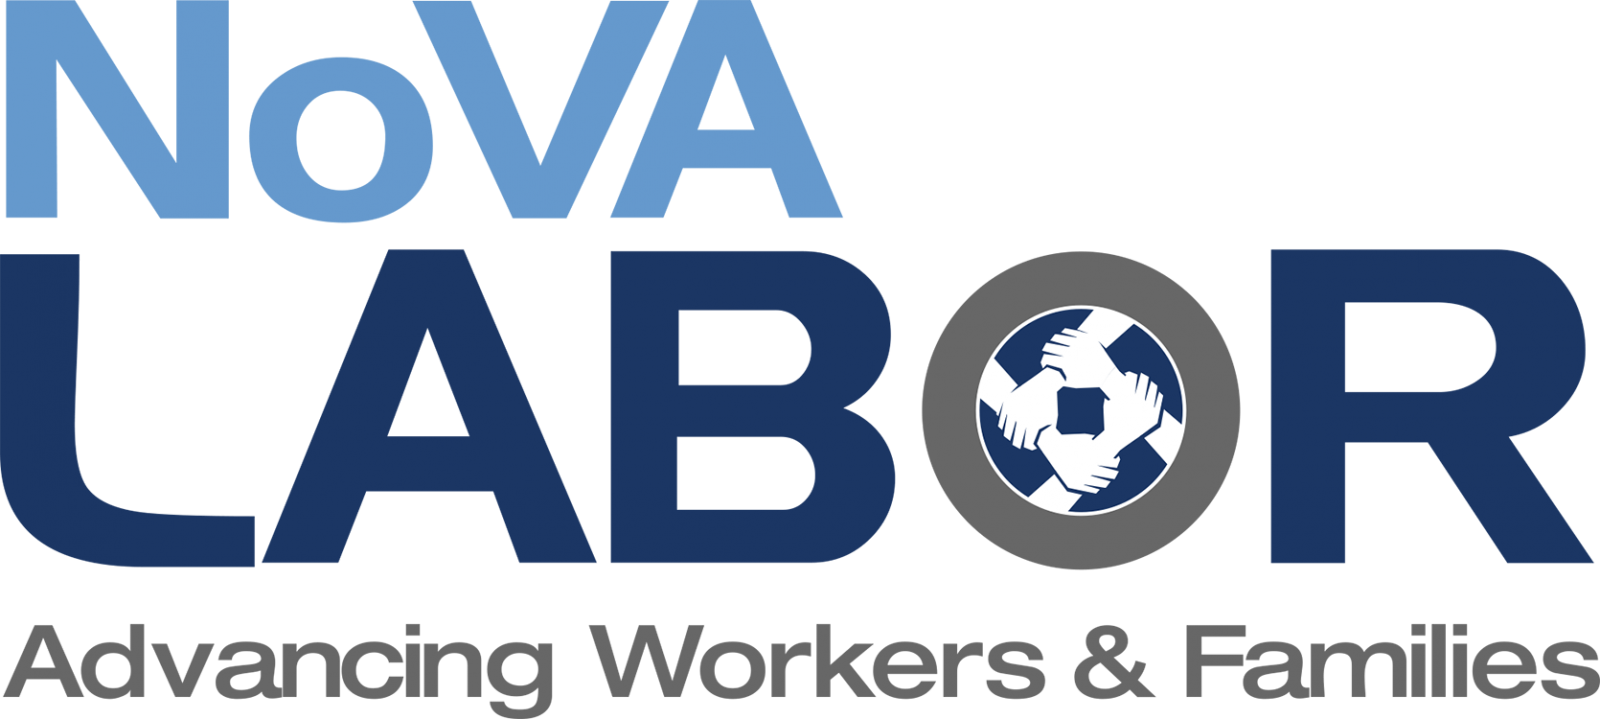 Northern Virginia Labor Federation, AFL-CIO